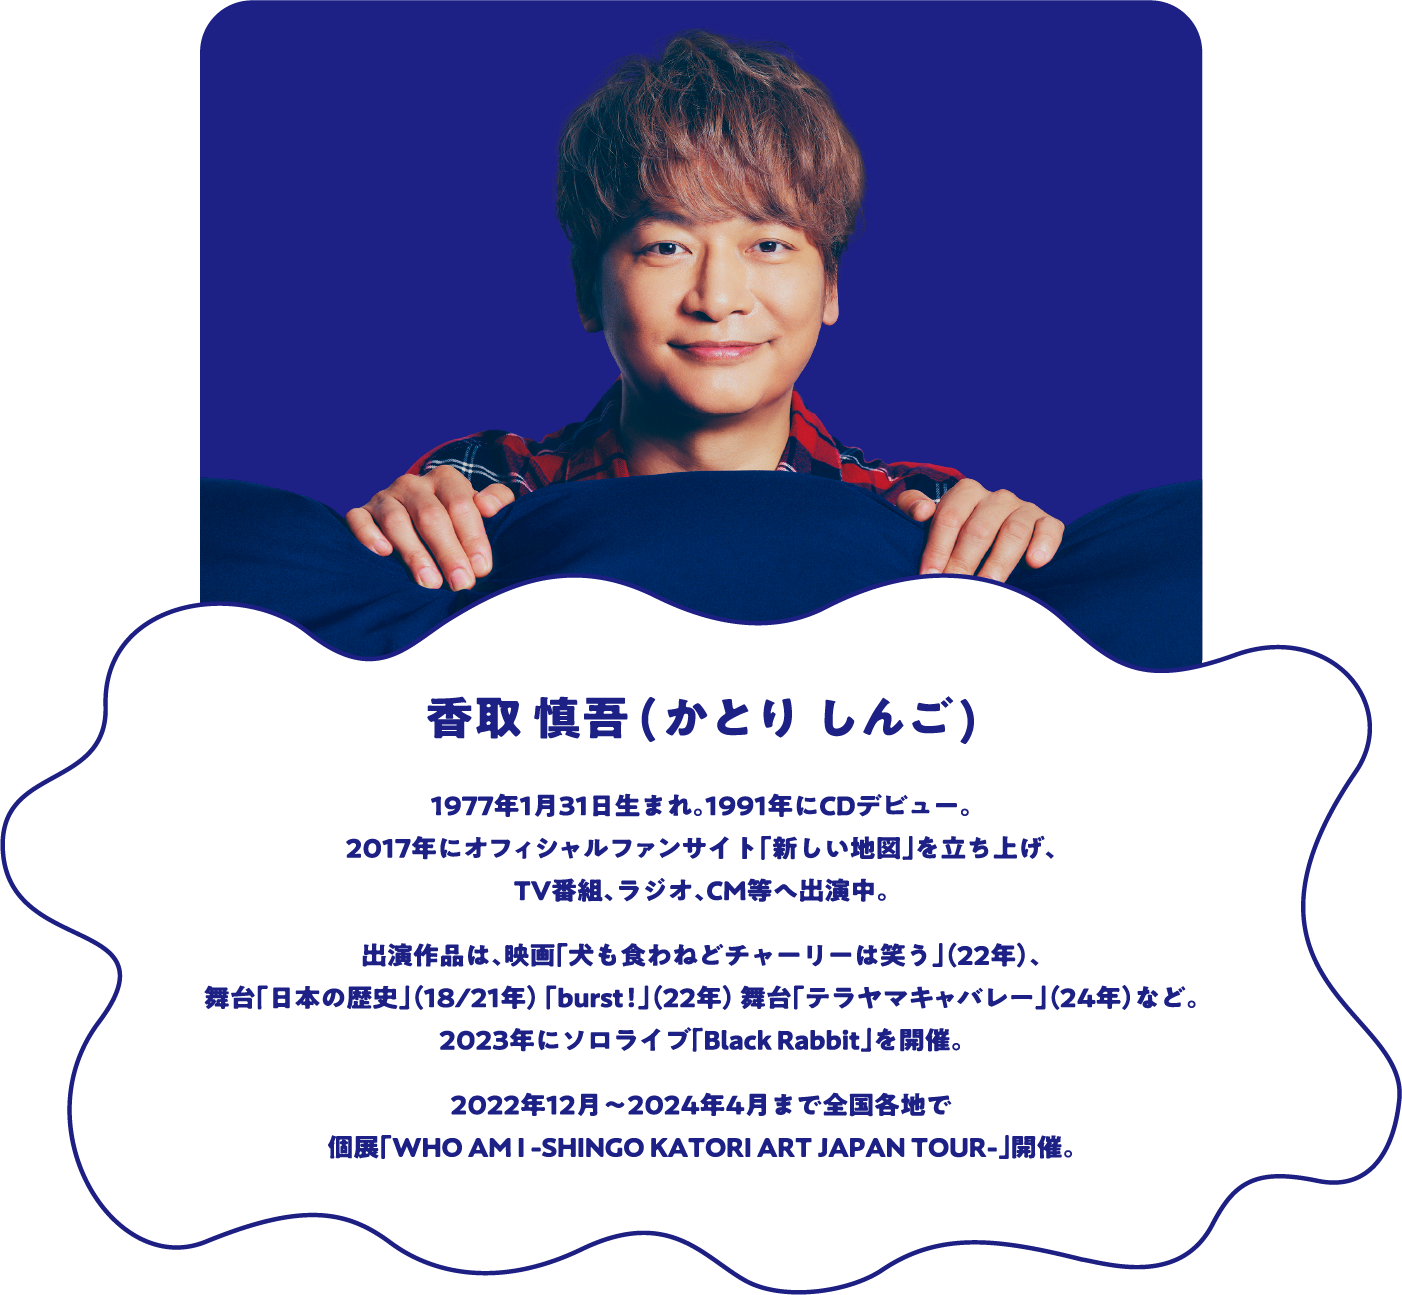 香取慎吾（かとり しんご） 1977年1月31日生まれ。1991年にCDデビュー。2017年にオフィシャルファンサイト「新しい地図」を立ち上げ、TV番組、ラジオ、CM等へ出演中。出演作品は、映画「犬も食わねどチャーリーは笑う」(22年)、舞台「日本の歴史」(18/21年)「burst!」(22年)舞台「テラヤマキャバレー」(24年)など。2023年にソロライブ「Black Rabbit」を開催。現在、個展「WHO AM I -SHINGO KATORI ART JAPAN TOUR-」で全国を巡回中。